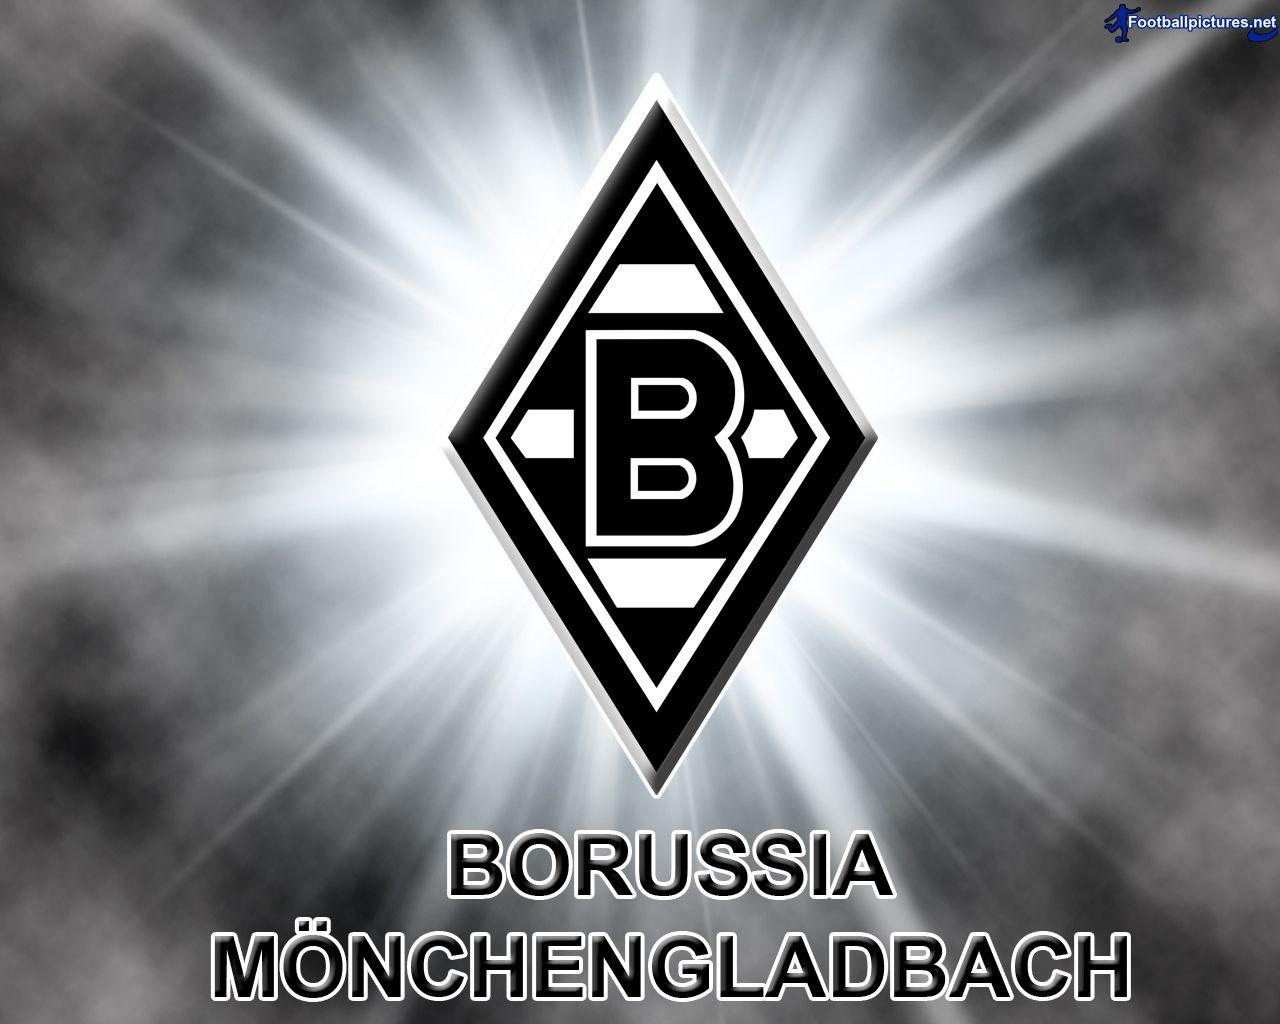 Borussia Monchengladbach picture, Football Wallpaper and Photo